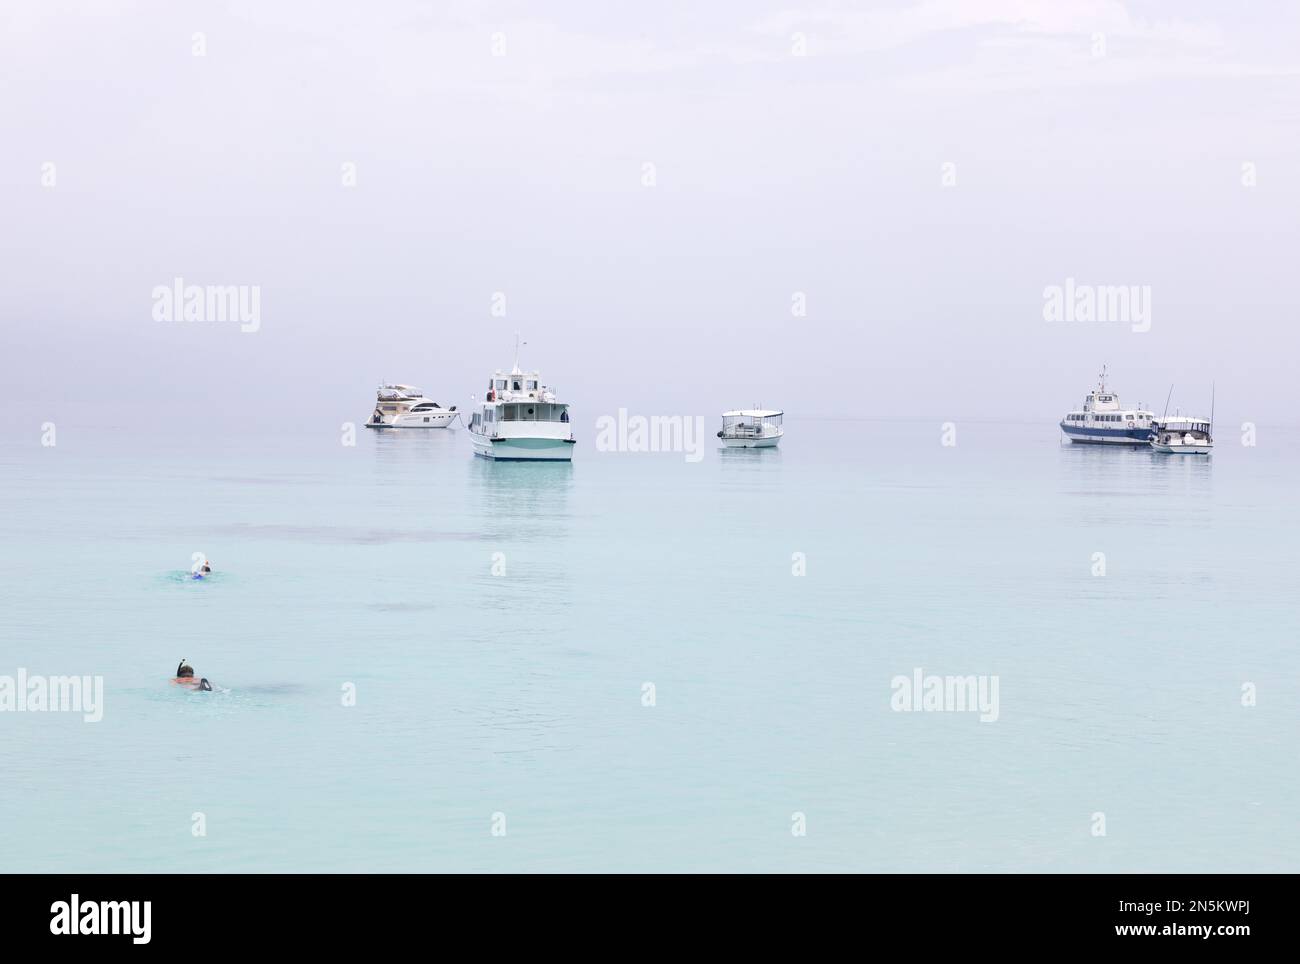 Acqua calma; 2 persone nuotano e fanno snorkeling vicino alle barche in una mattina calma, Maldive, l'Oceano Indiano Asia. Concetto tranquillo e tranquillo. Foto Stock